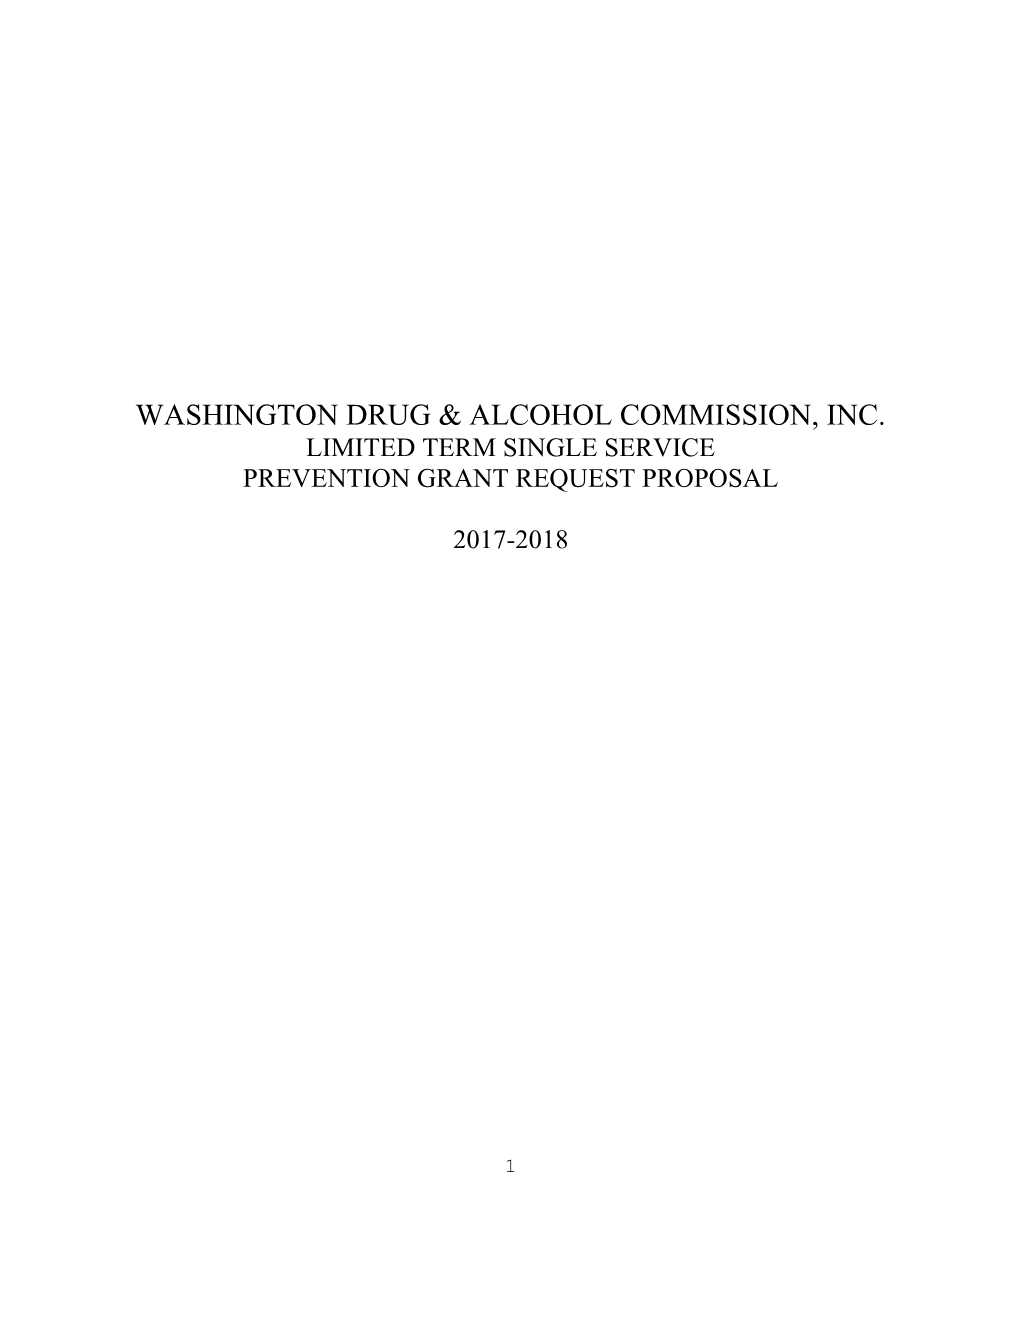 Washington Drug & Alcohol Commission, Inc